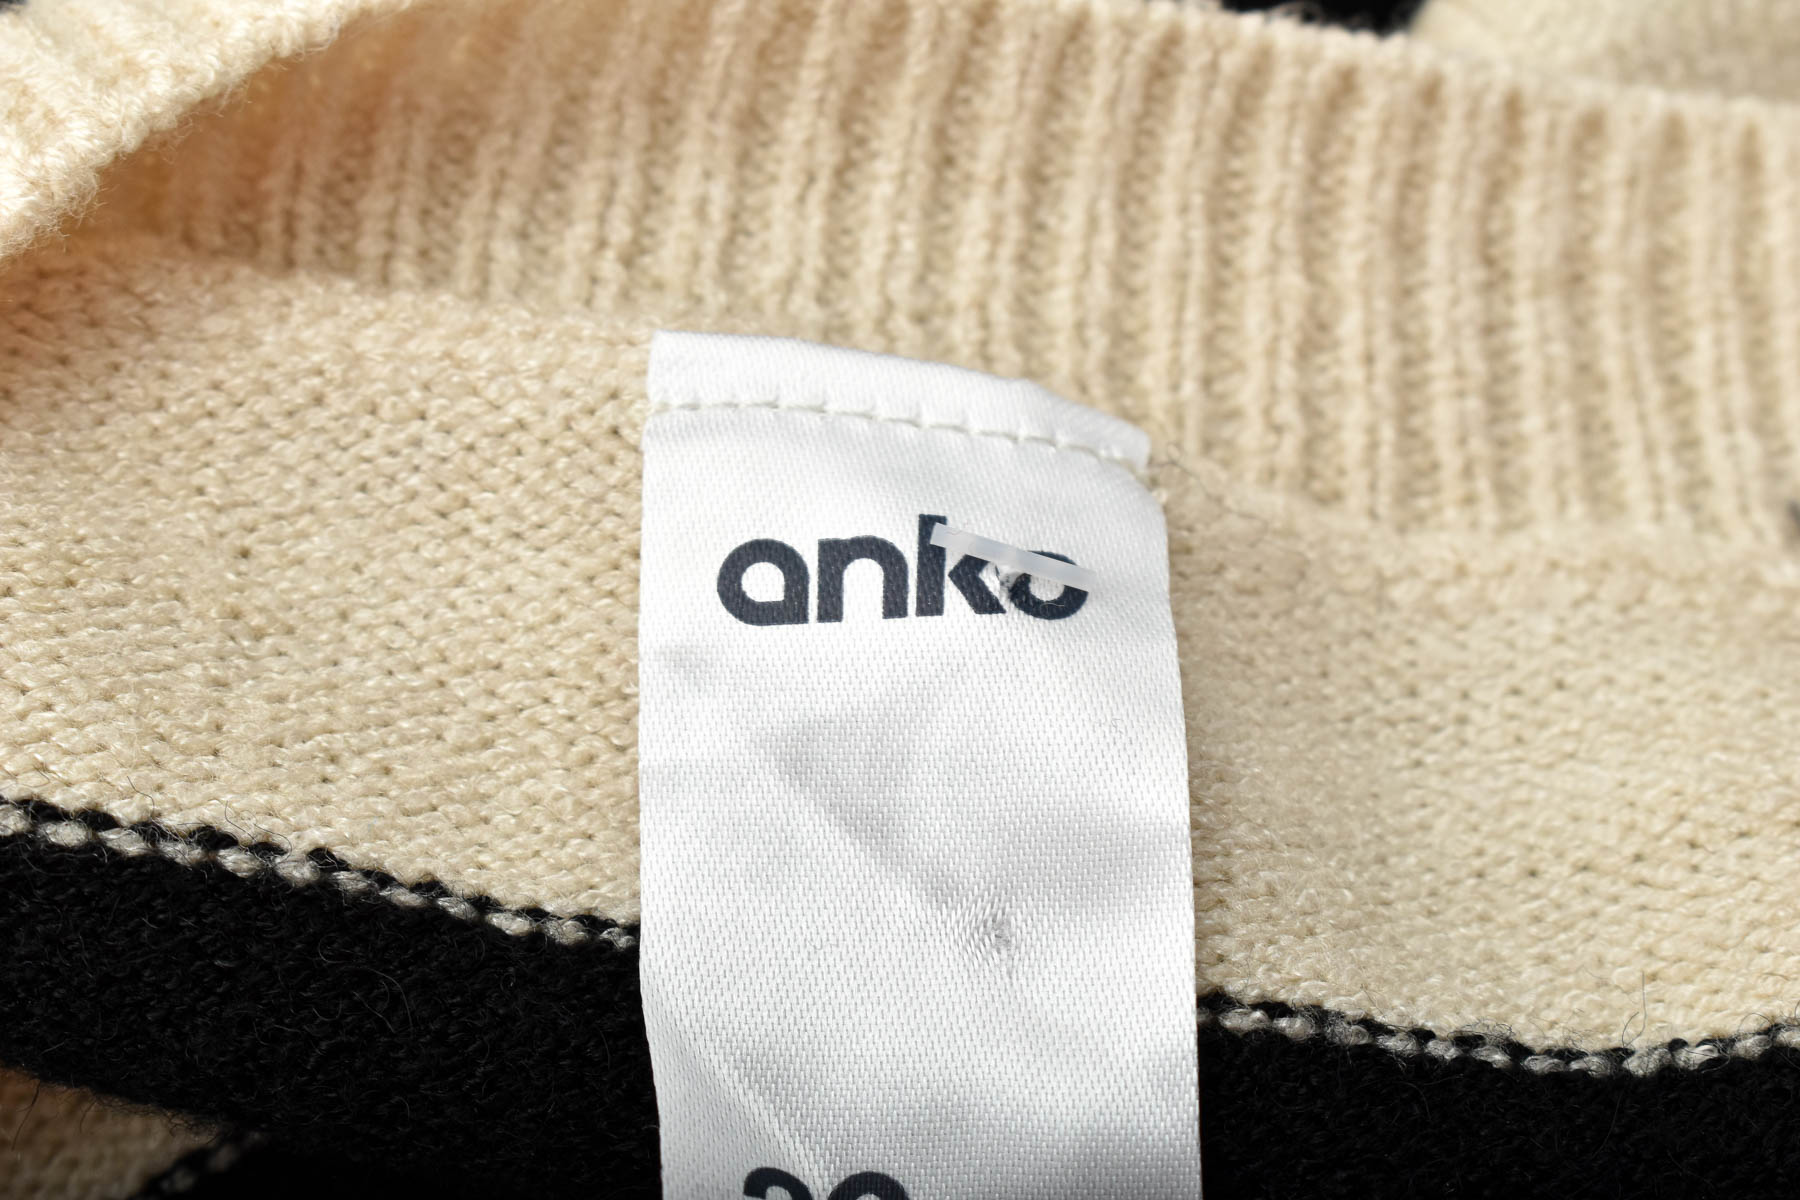 Γυναικείο πουλόβερ - Anko - 2